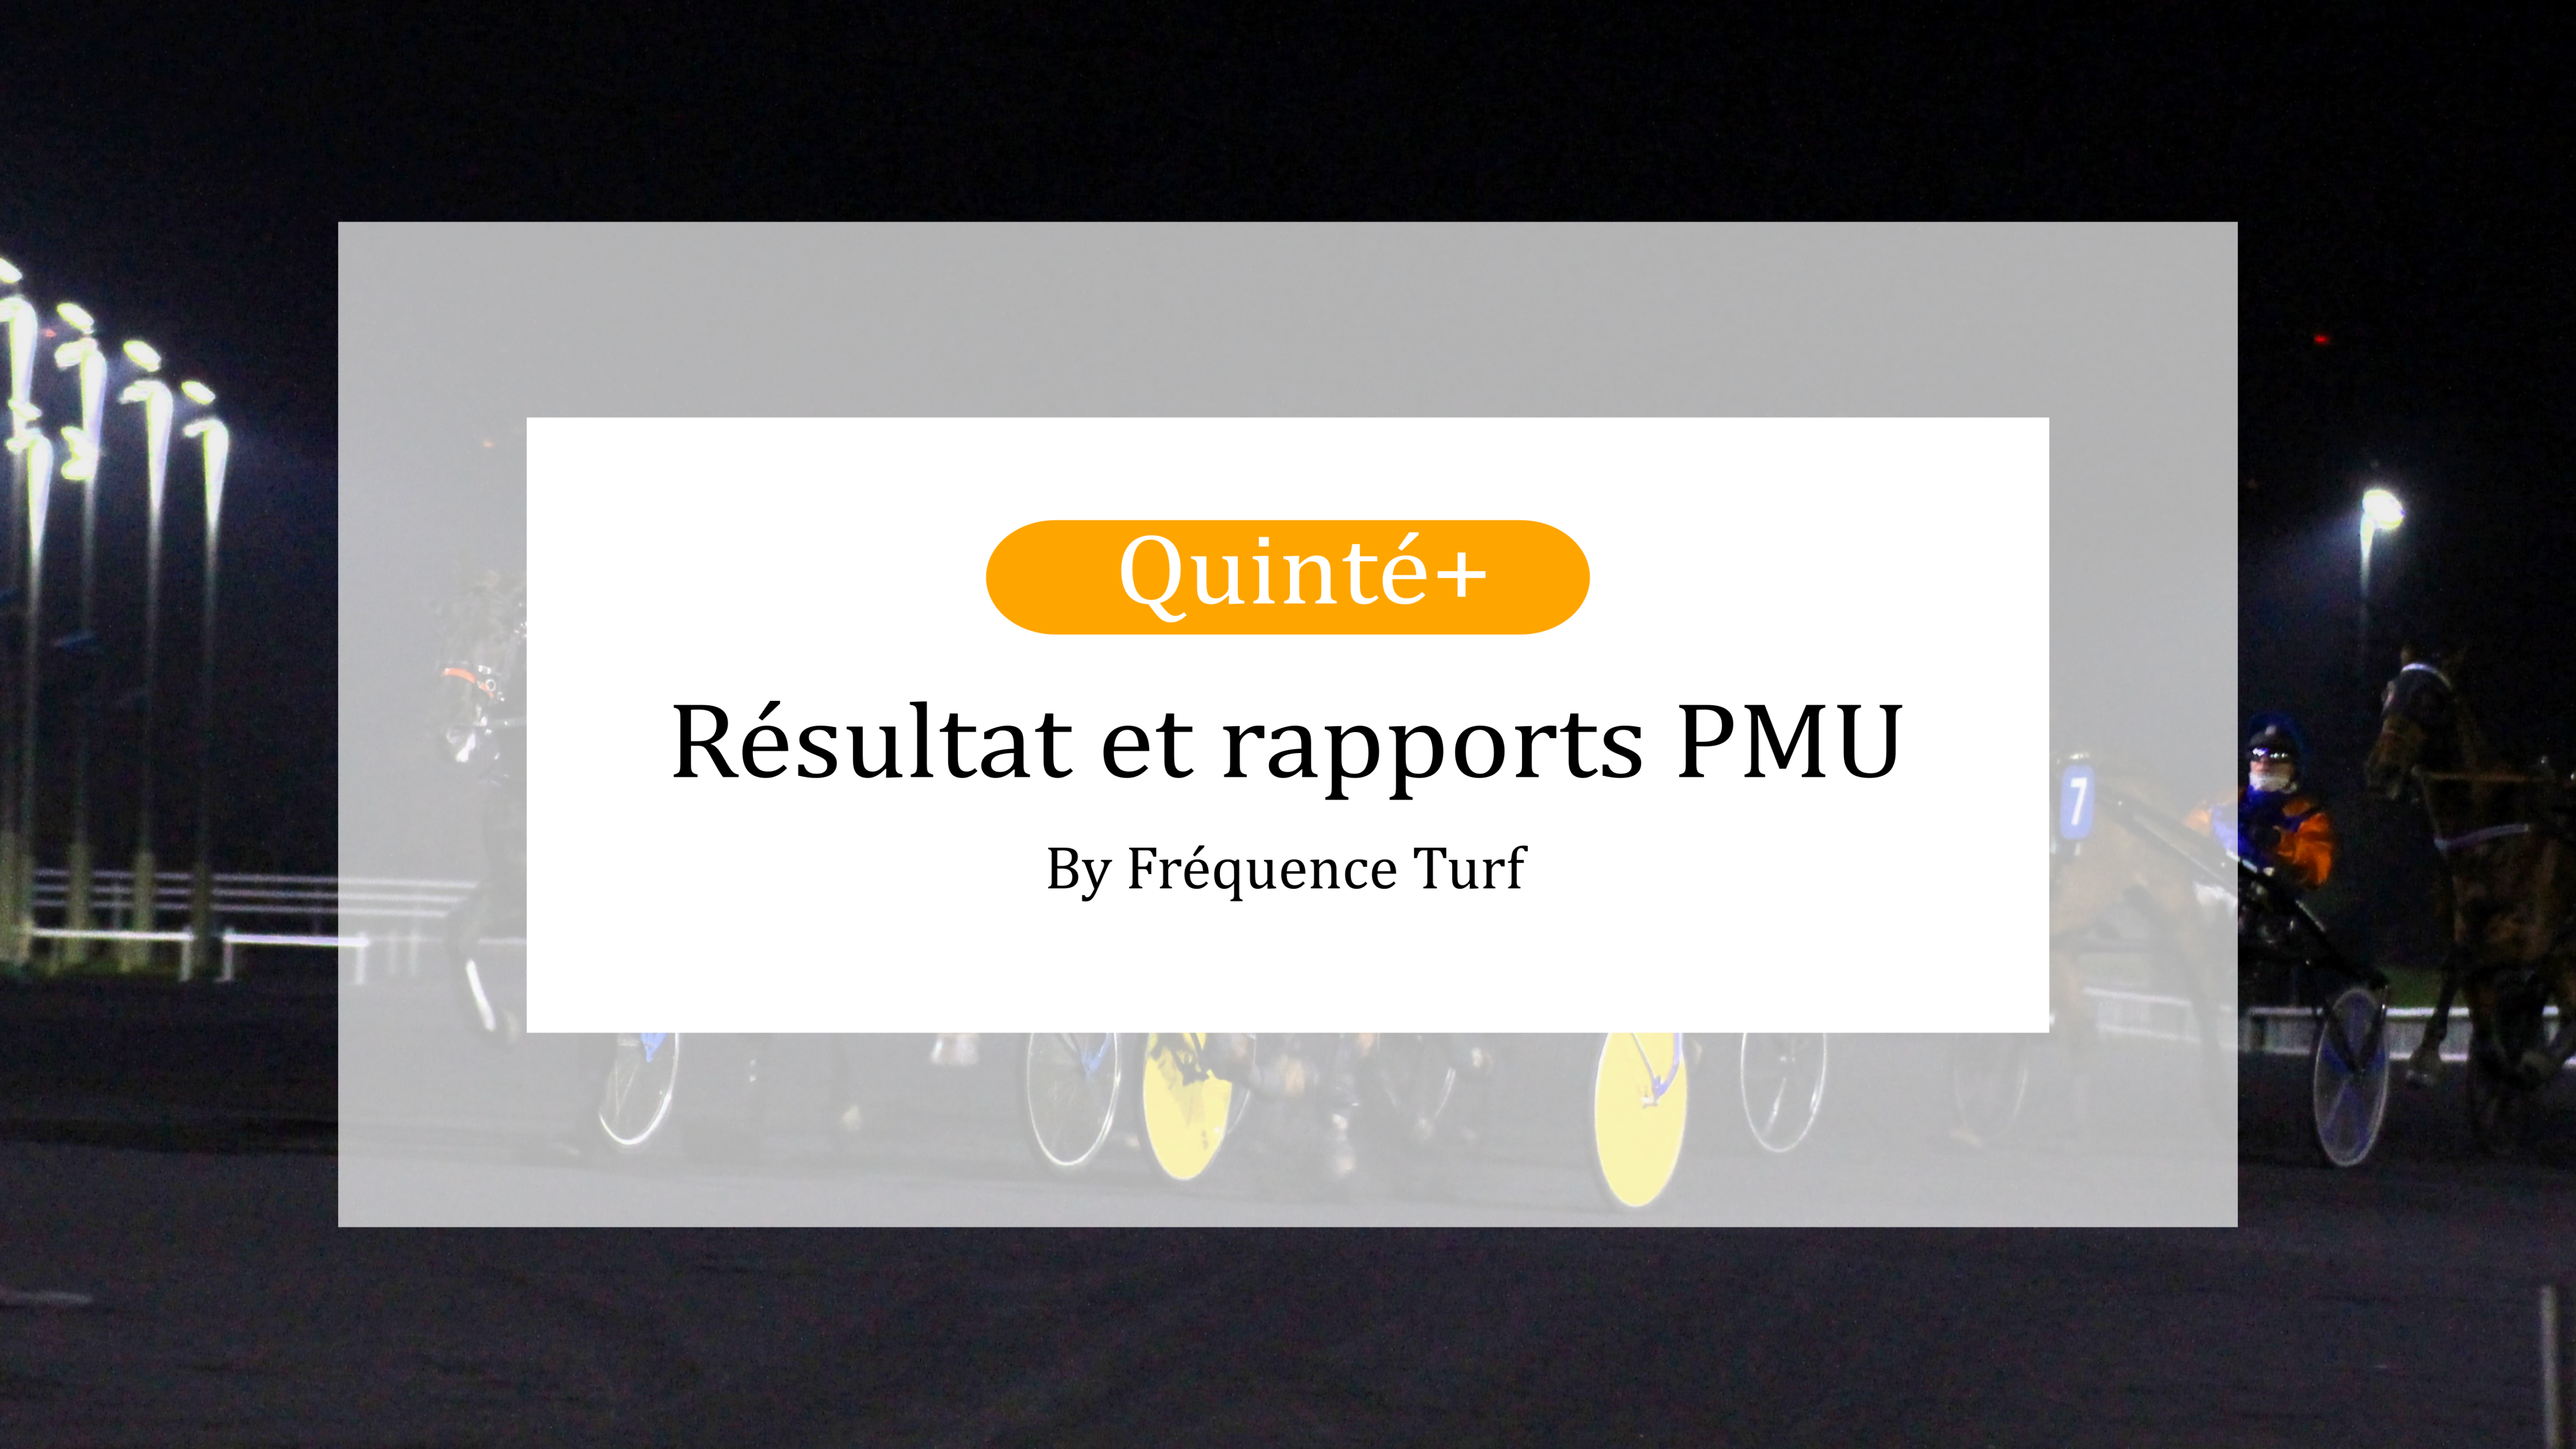 Résultat et rapports PMU du Quinté